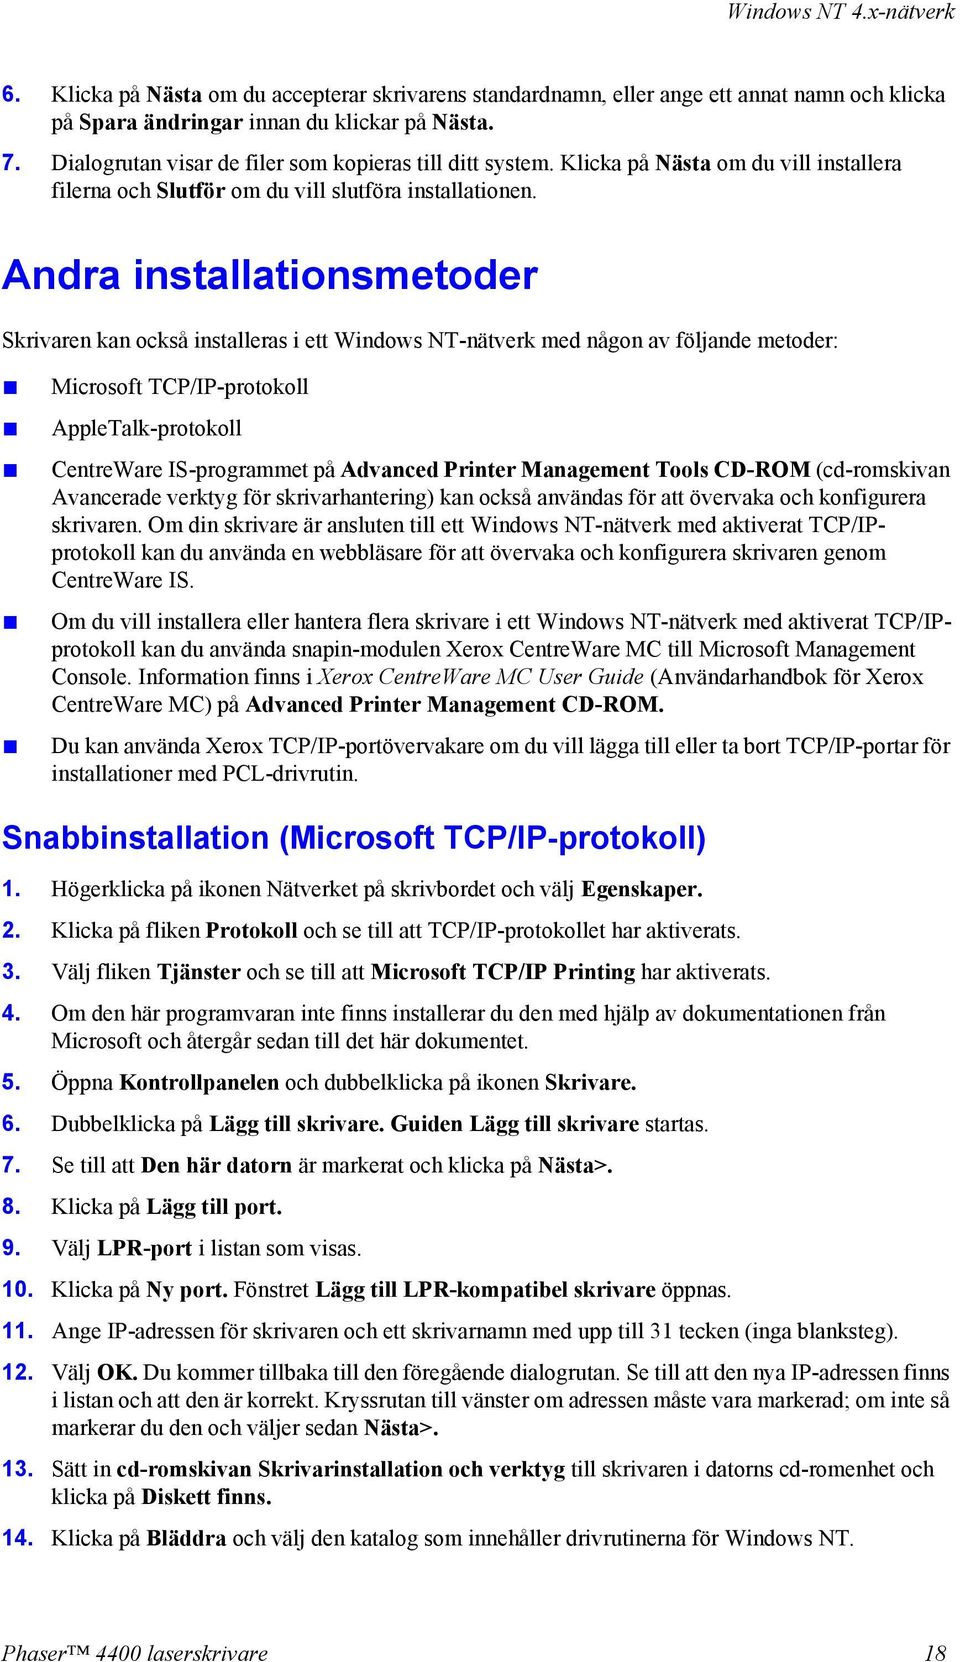 Andra installationsmetoder Skrivaren kan också installeras i ett Windows NT-nätverk med någon av följande metoder: Microsoft TCP/IP-protokoll AppleTalk-protokoll CentreWare IS-programmet på Advanced